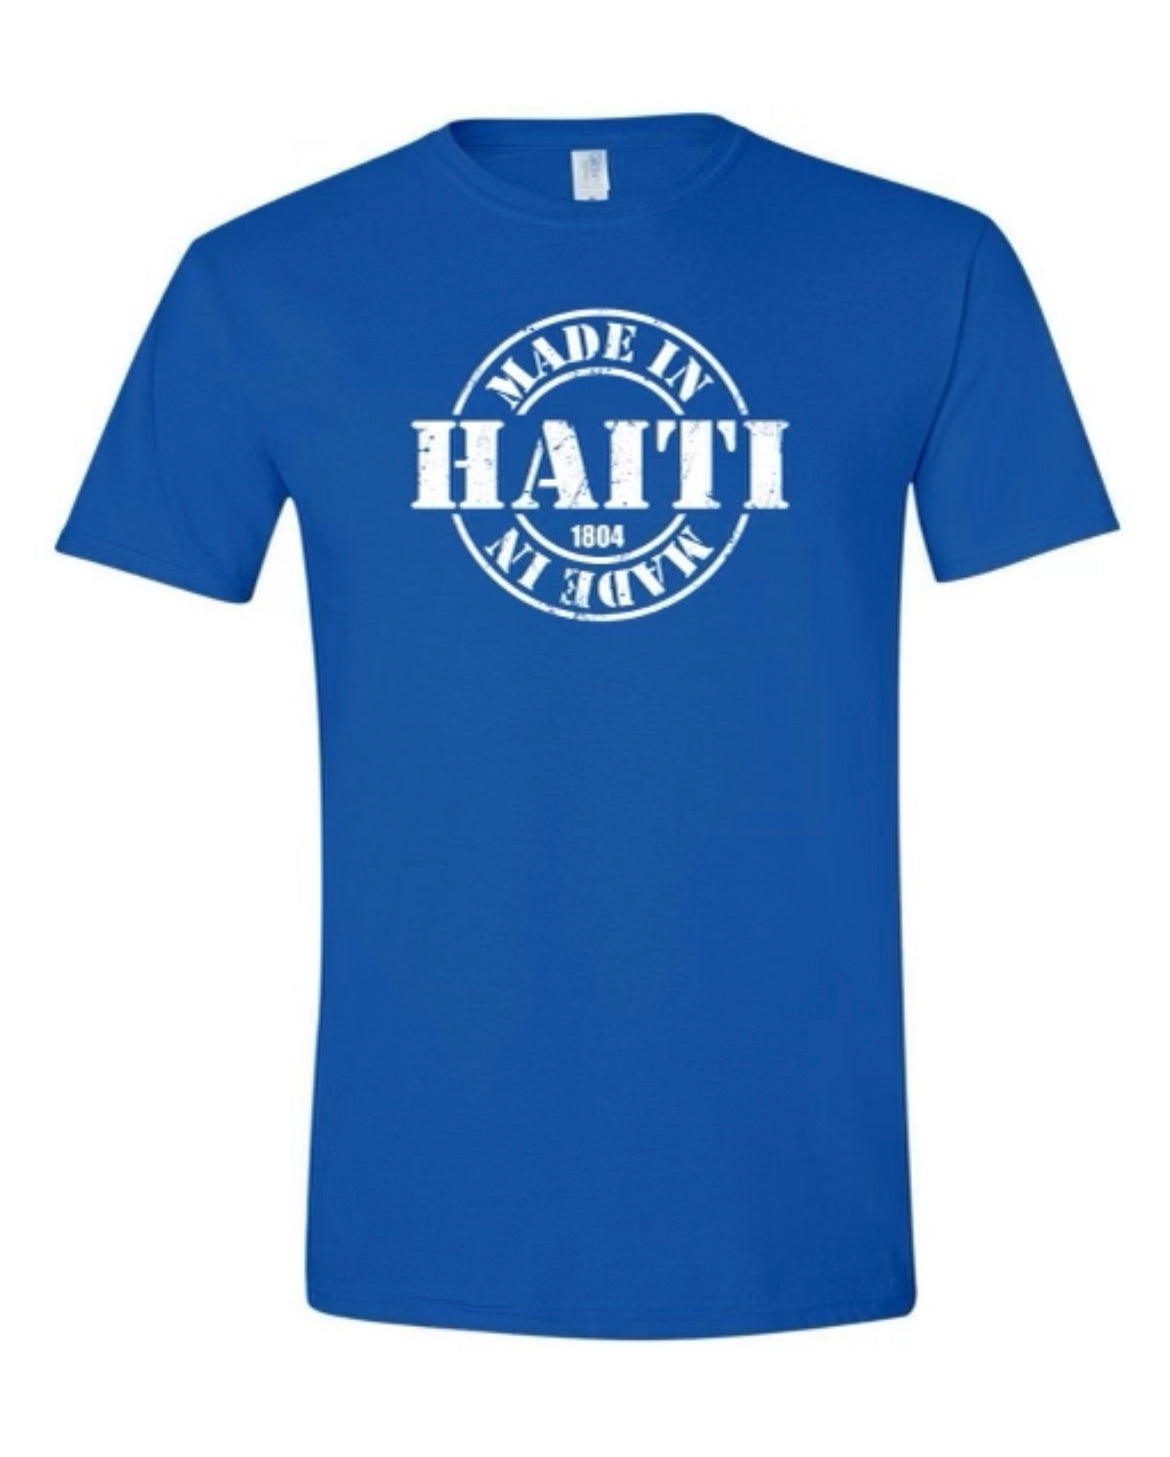 Made in Haiti Puff Blue T-shirt